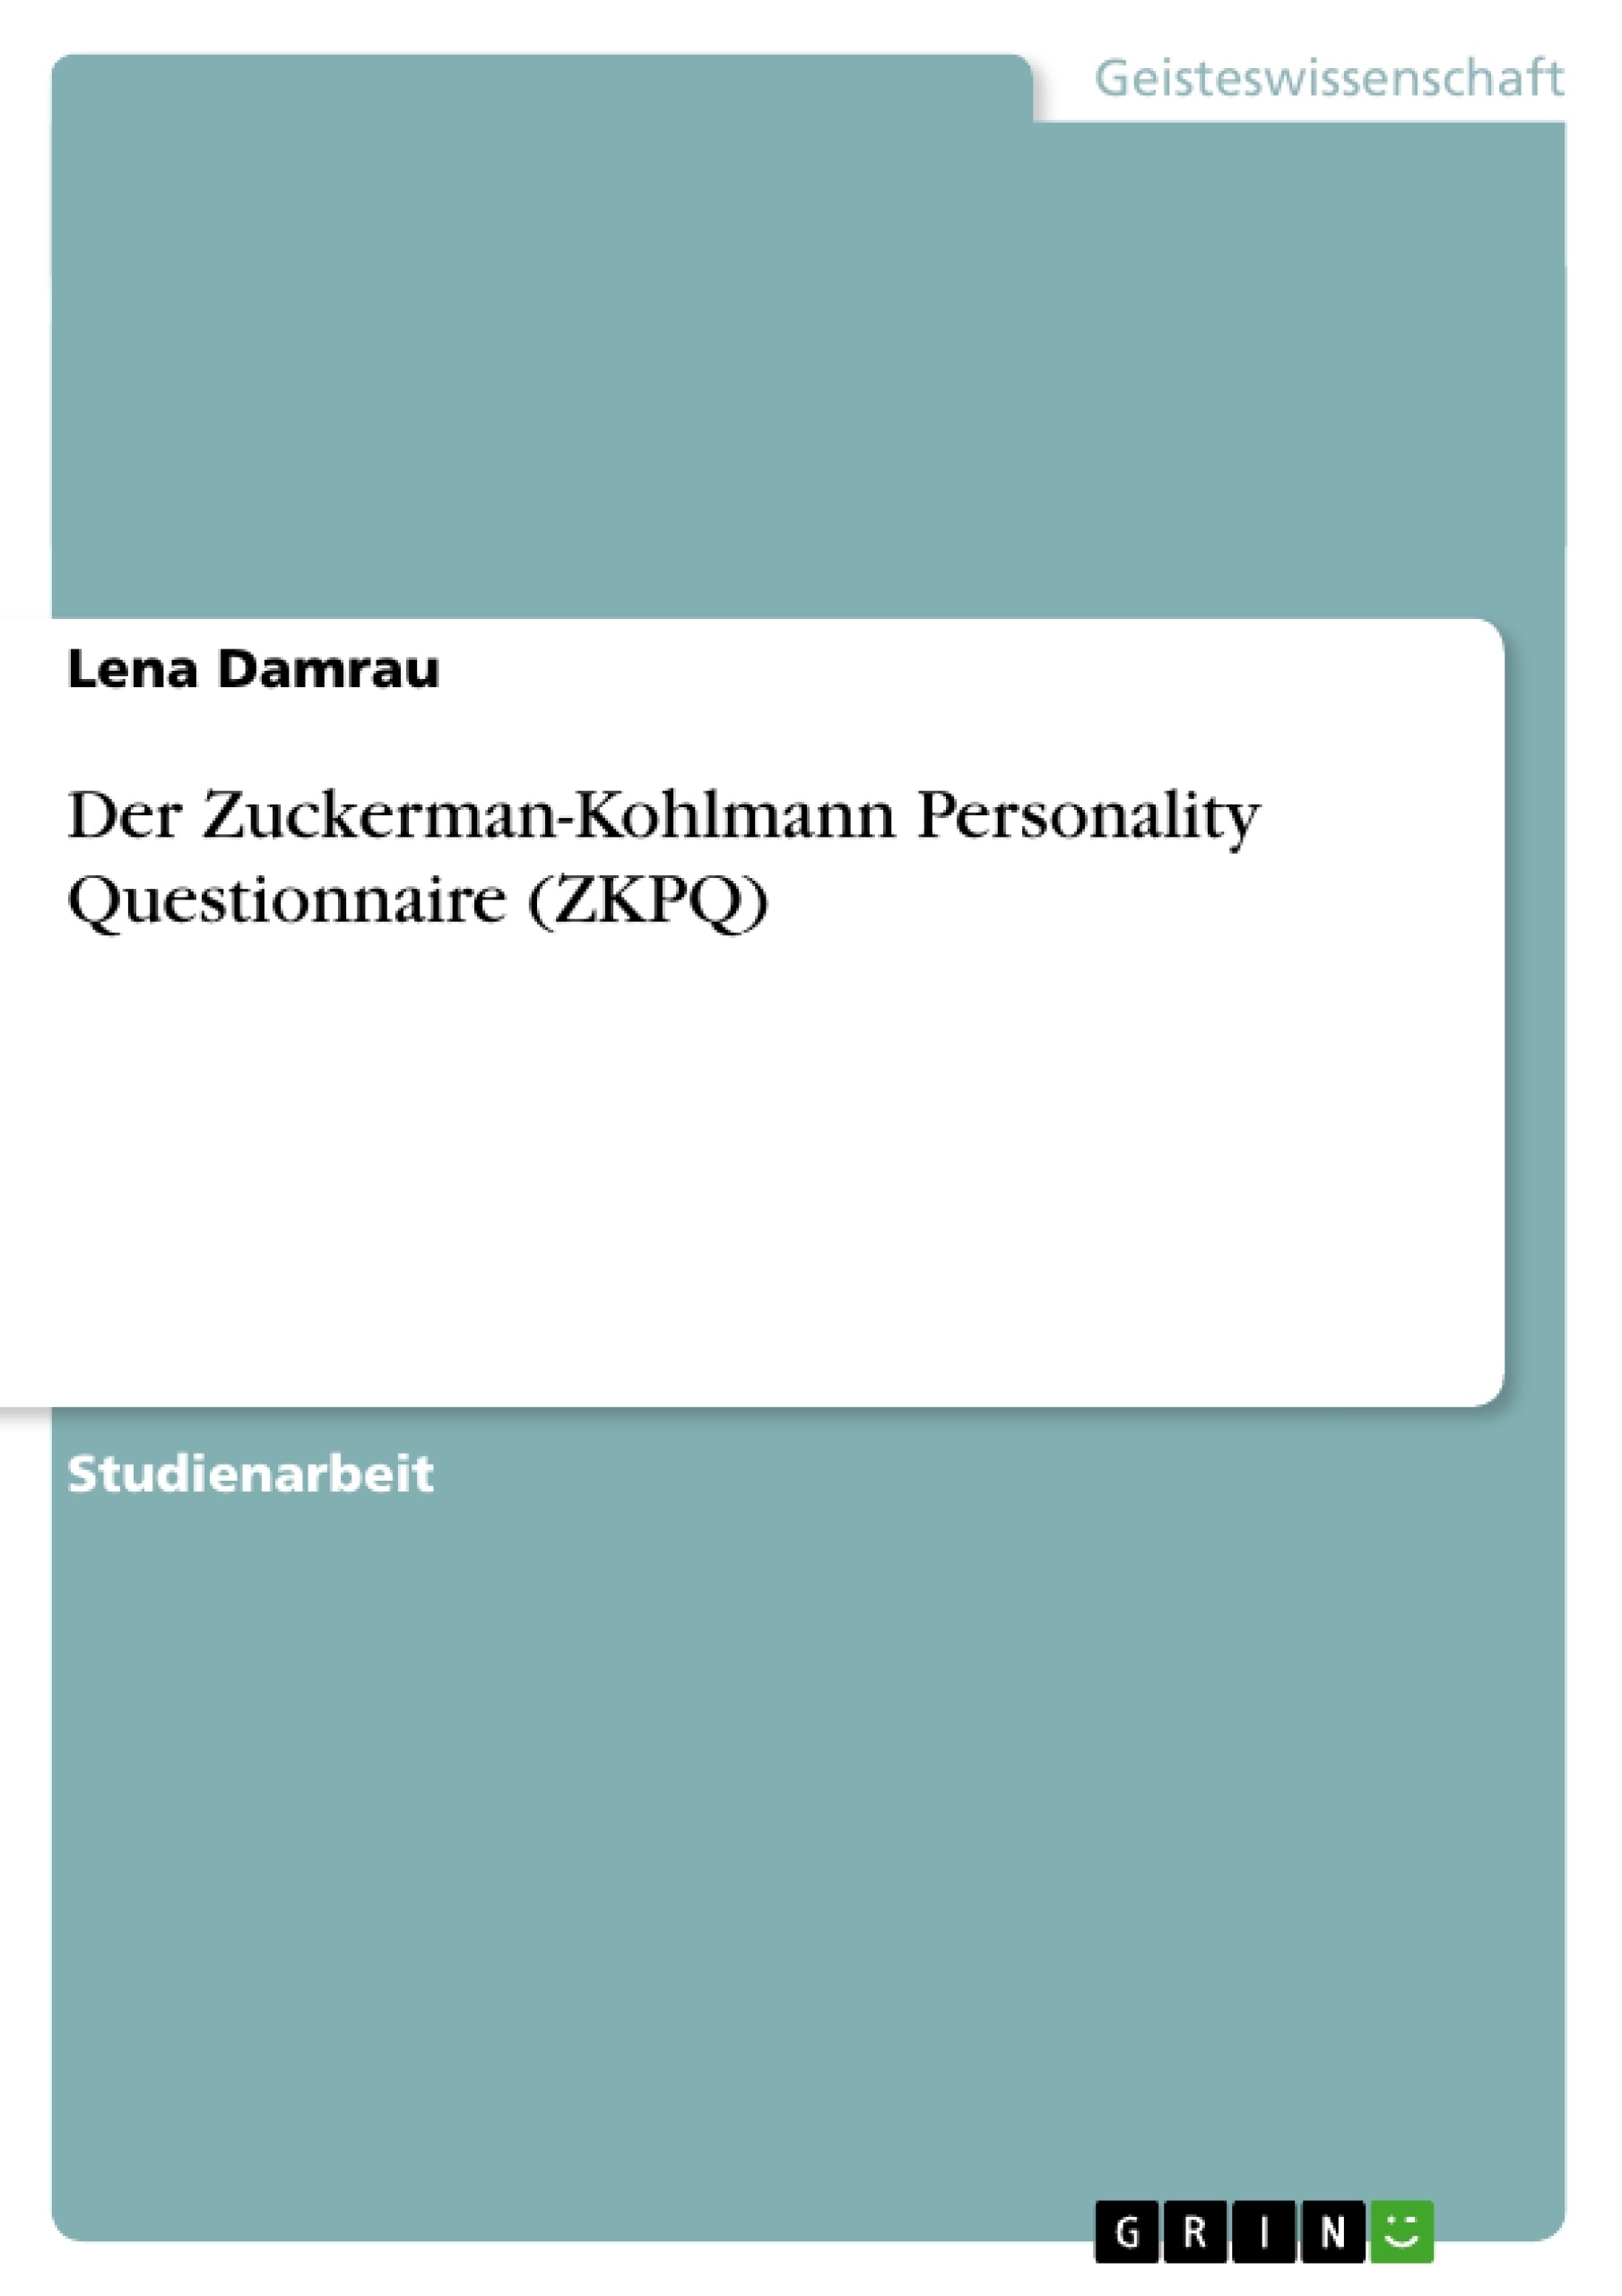 Título: Der Zuckerman-Kohlmann Personality Questionnaire (ZKPQ) 